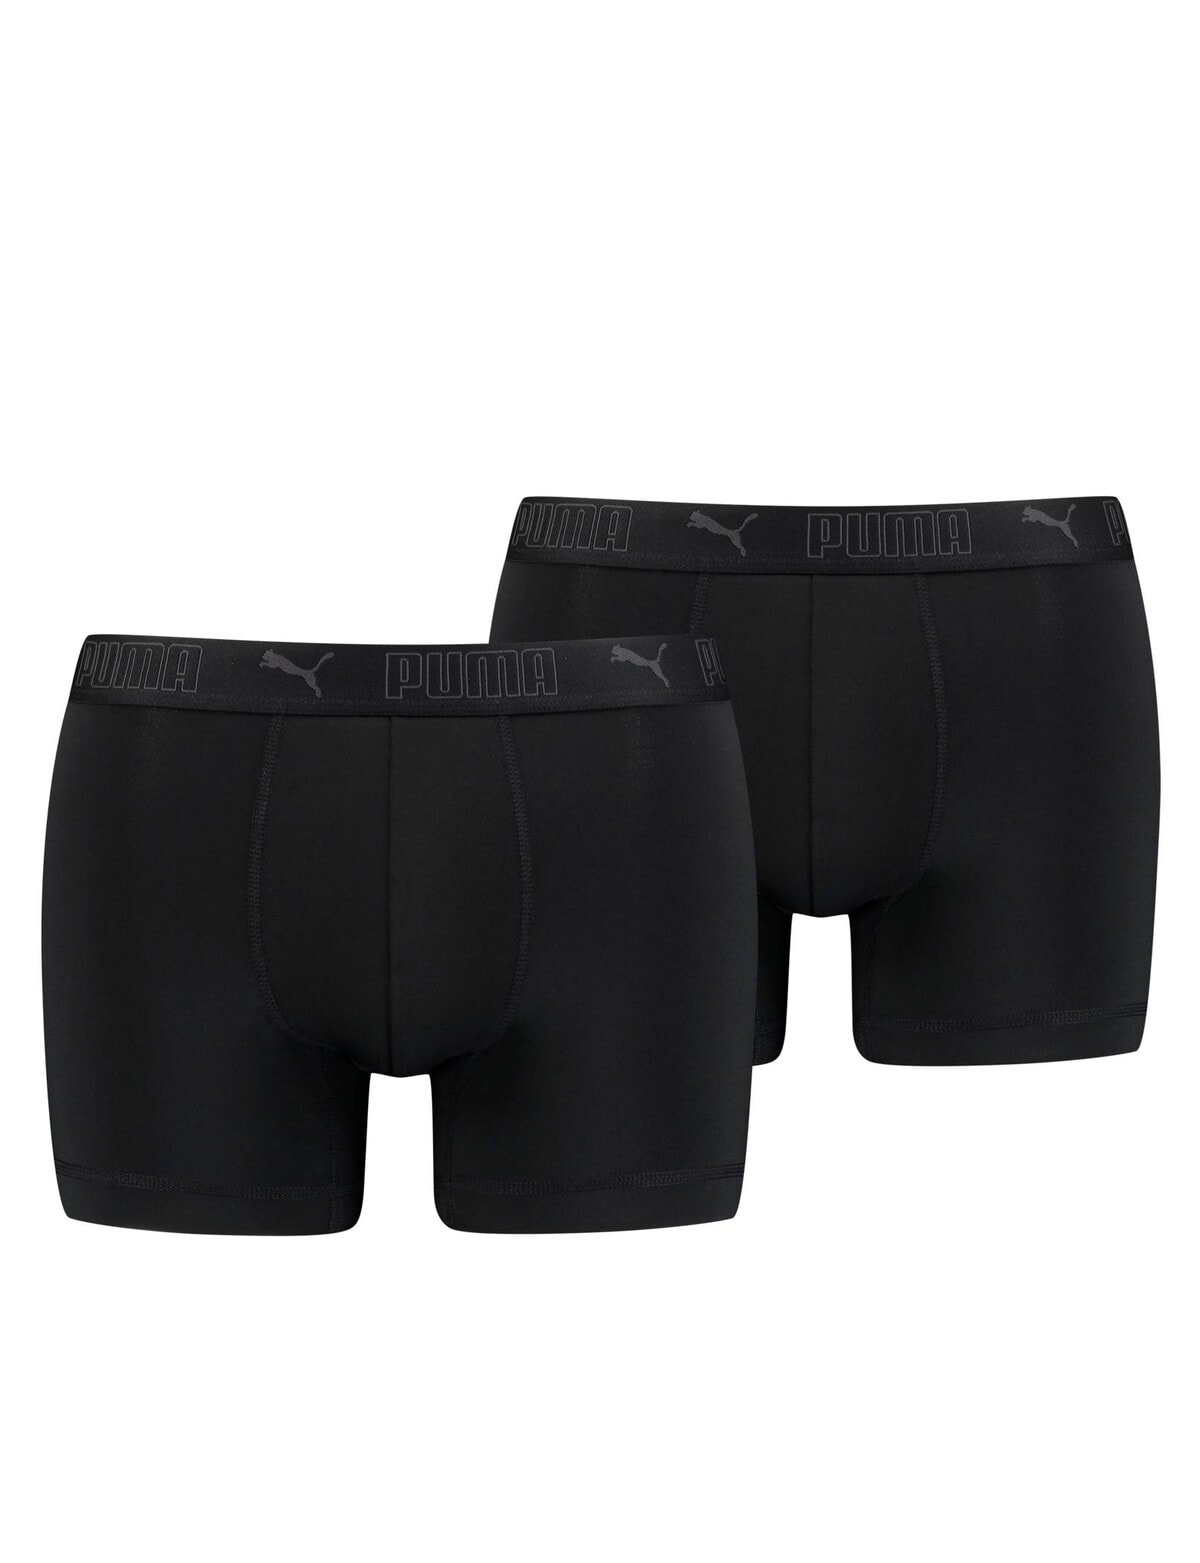 Puma Microfibre Heiq Fresh Trunk, 2-Pack, Black - Underwear